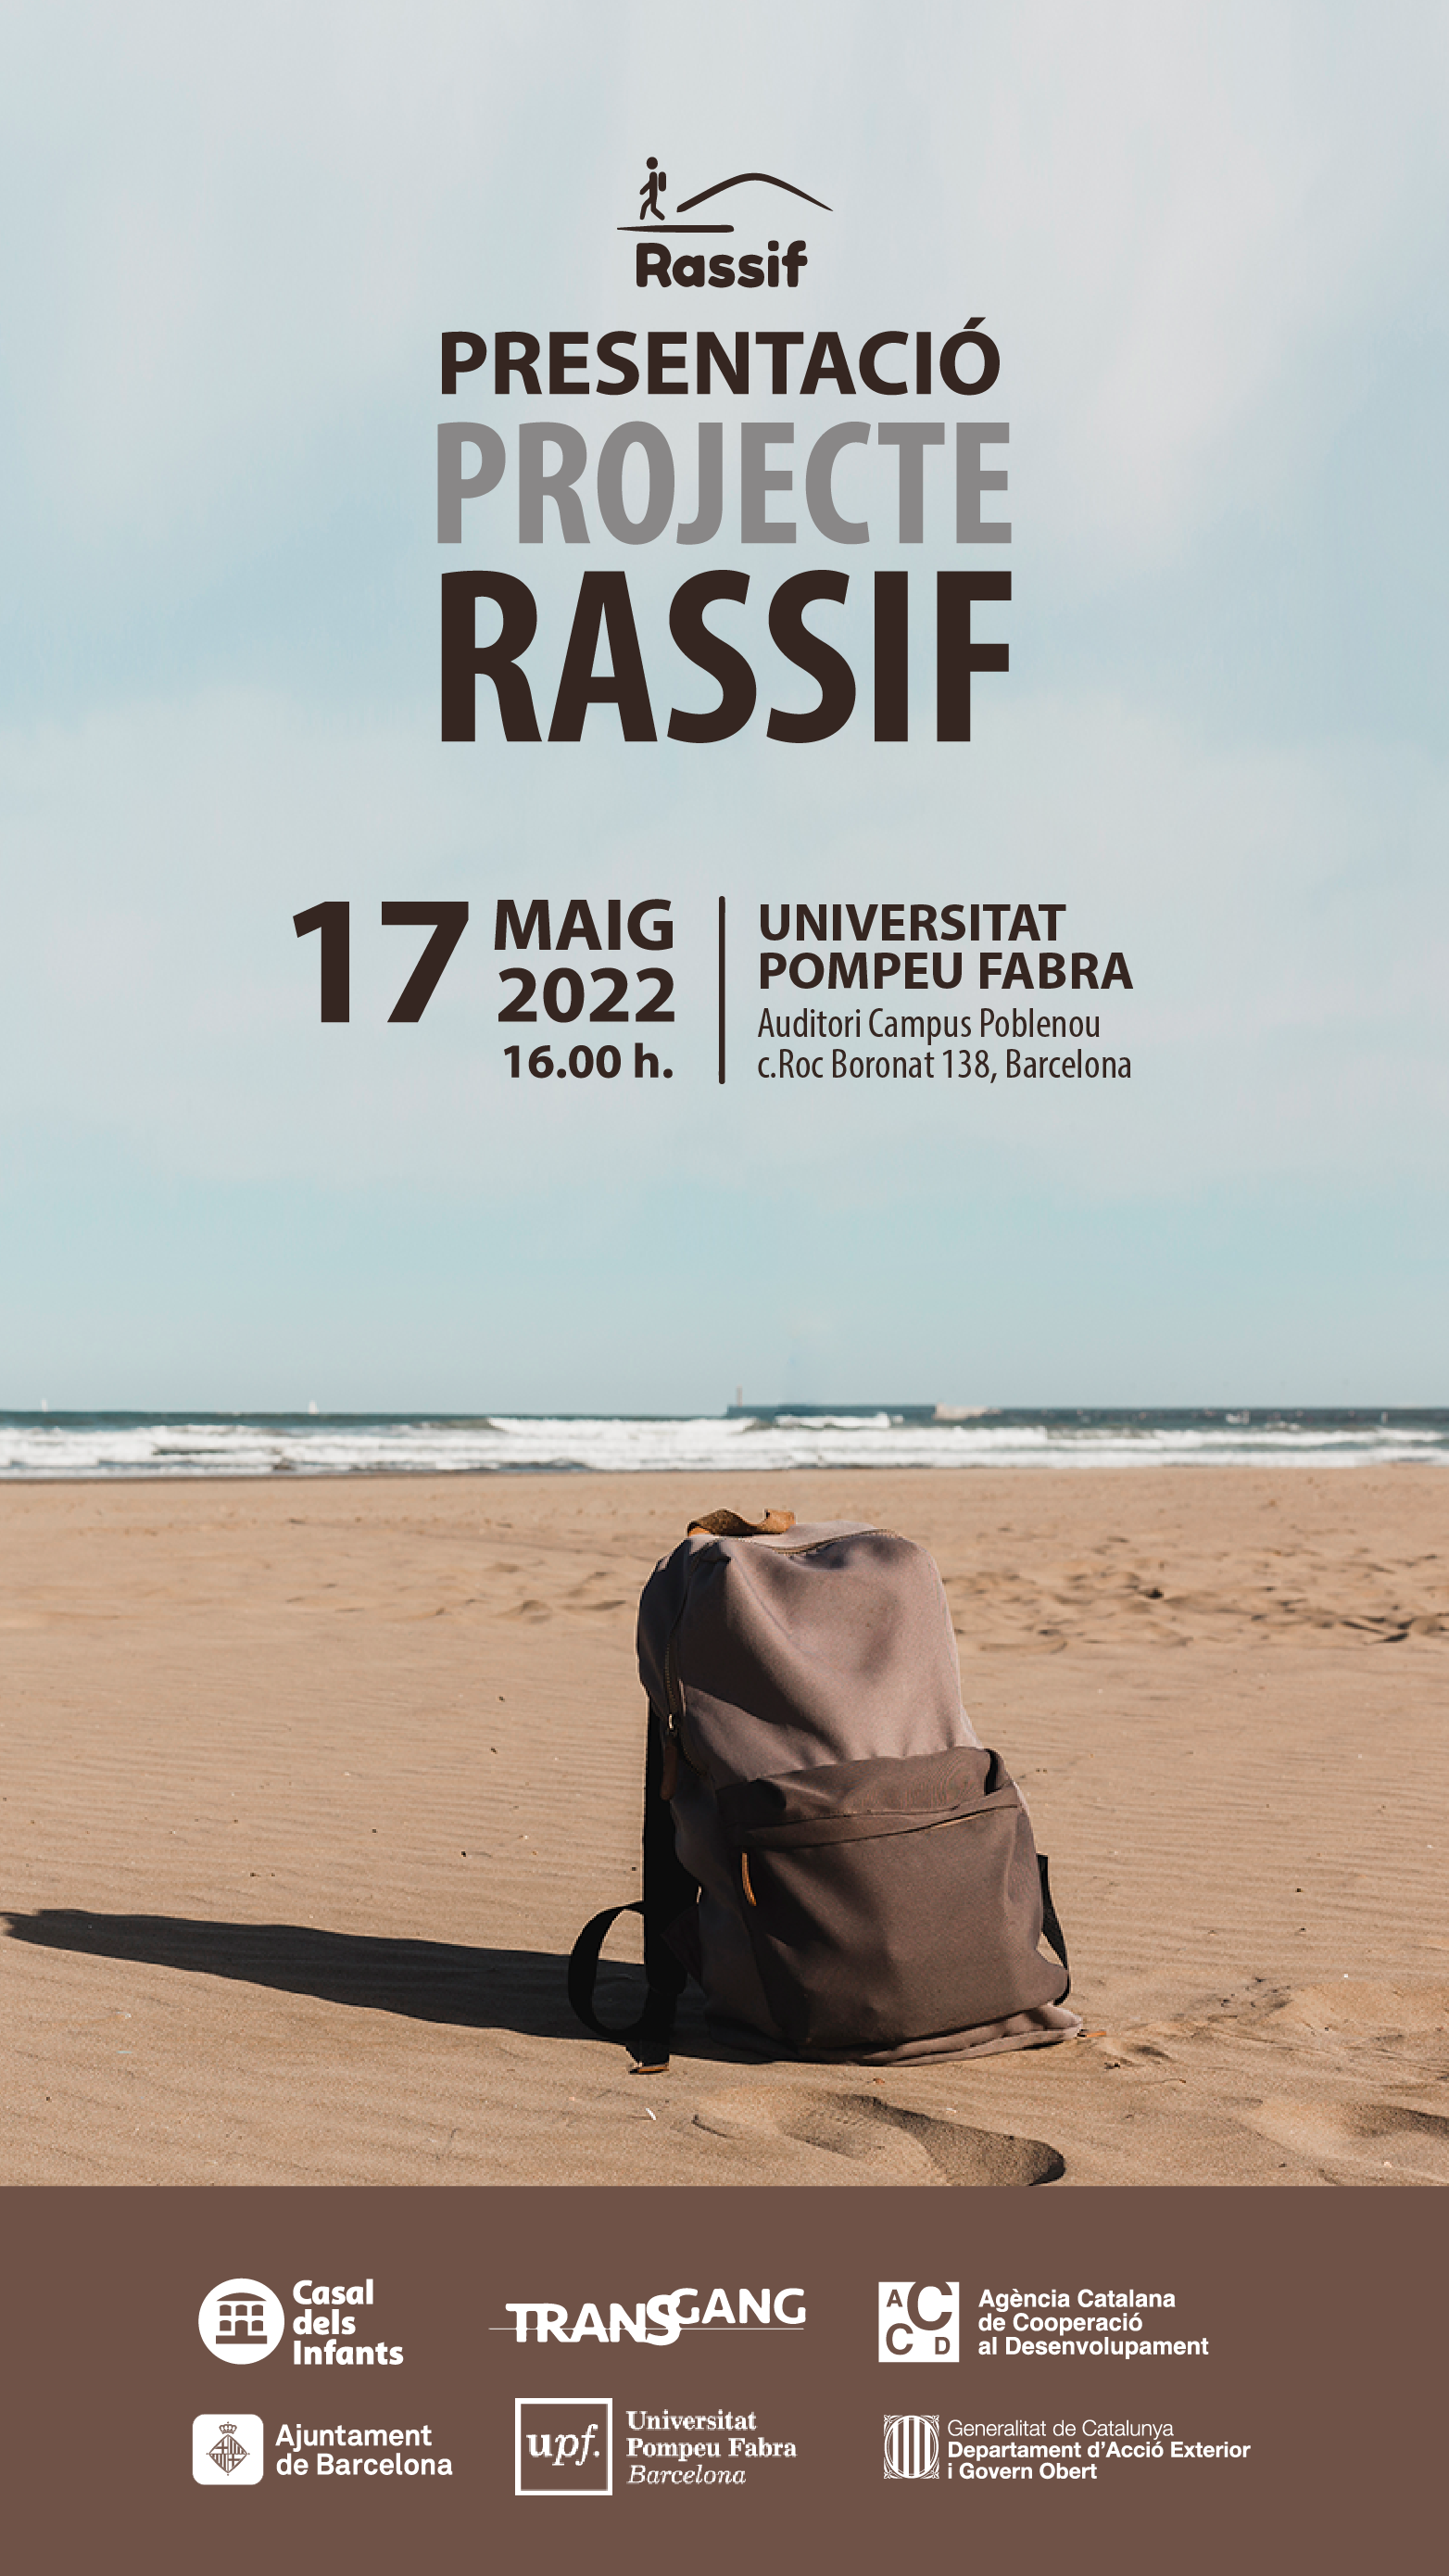 El Casal dels Infants presenta el proyecto Rassif para la protección trasnacional de los niños y jóvenes migrantes solos